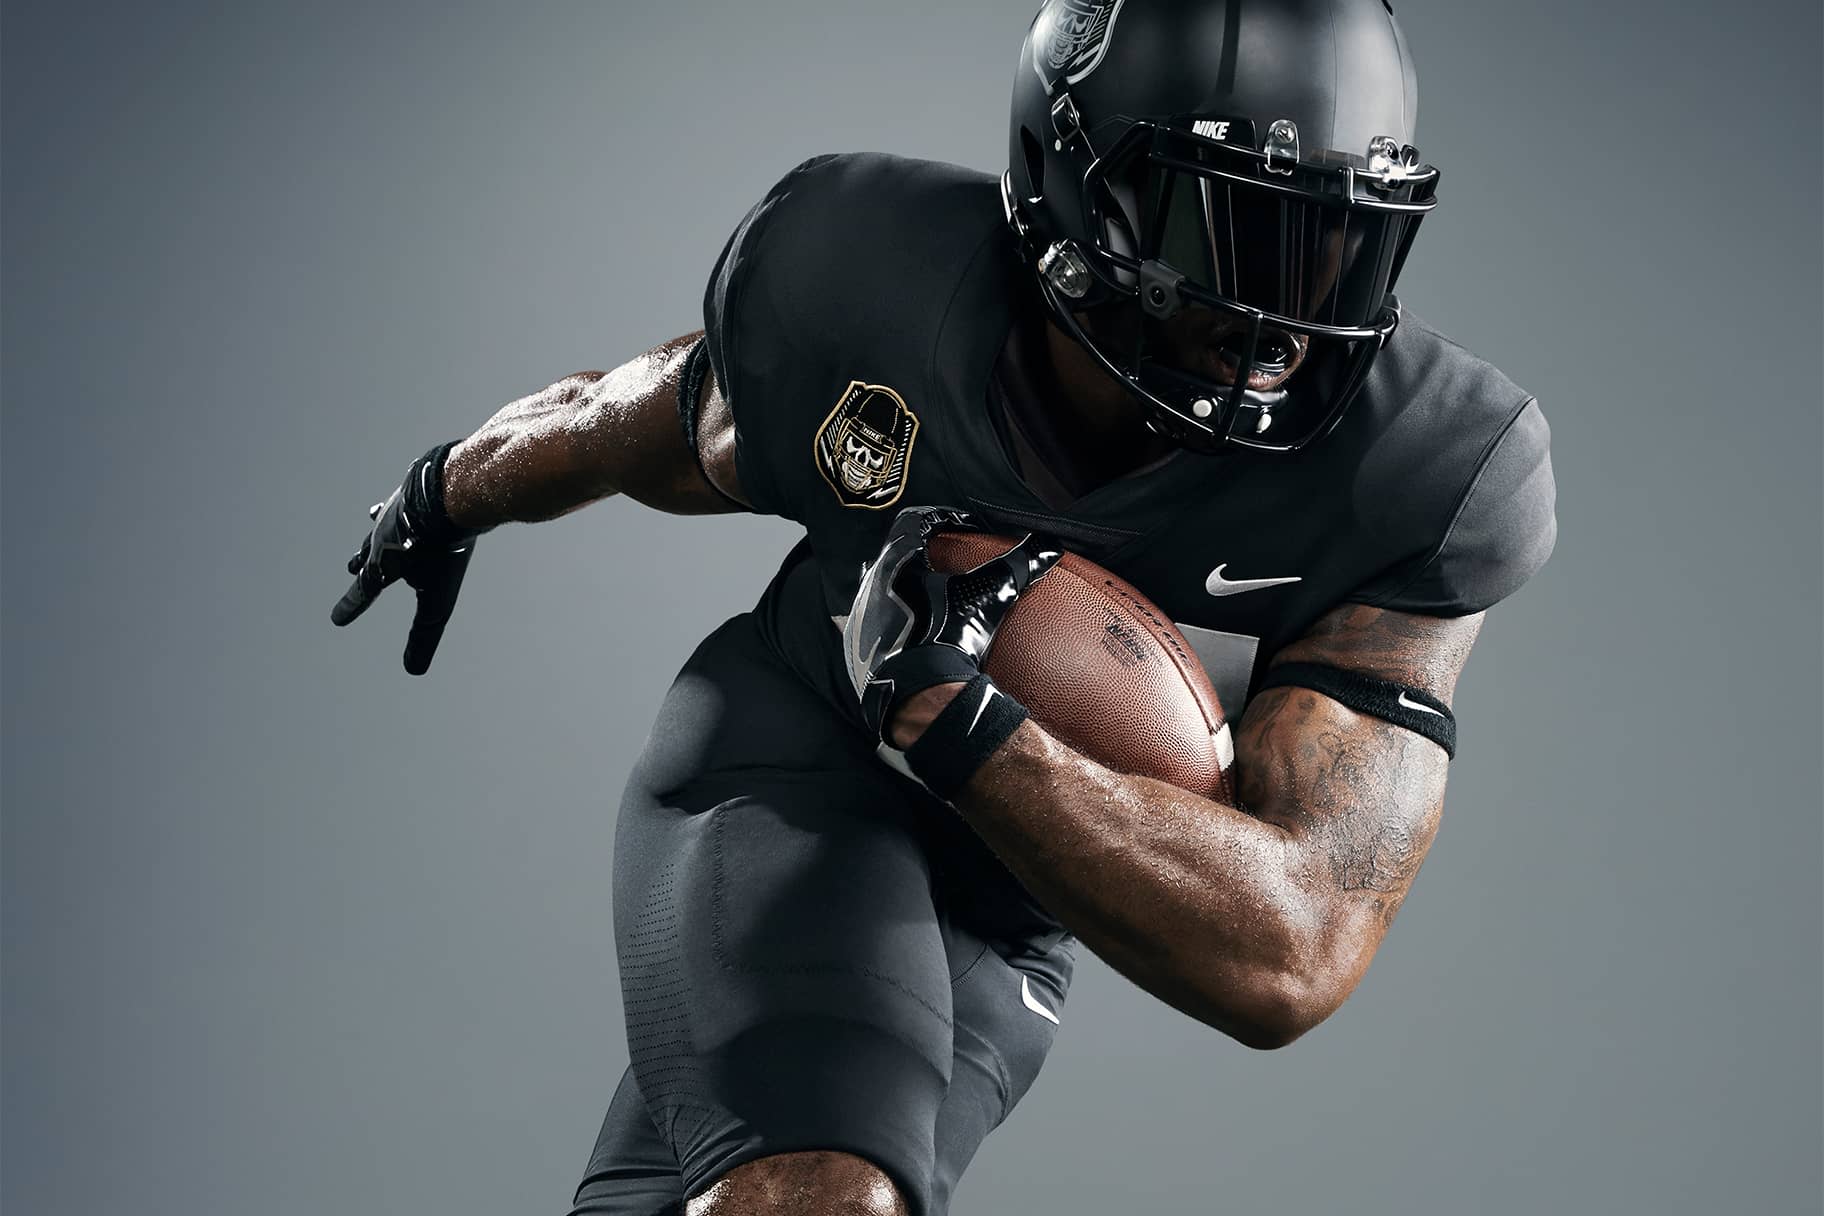 Allergie Honderd jaar media 7 Pieces of Protective American Football Gear From Nike to Buy Now. Nike NL